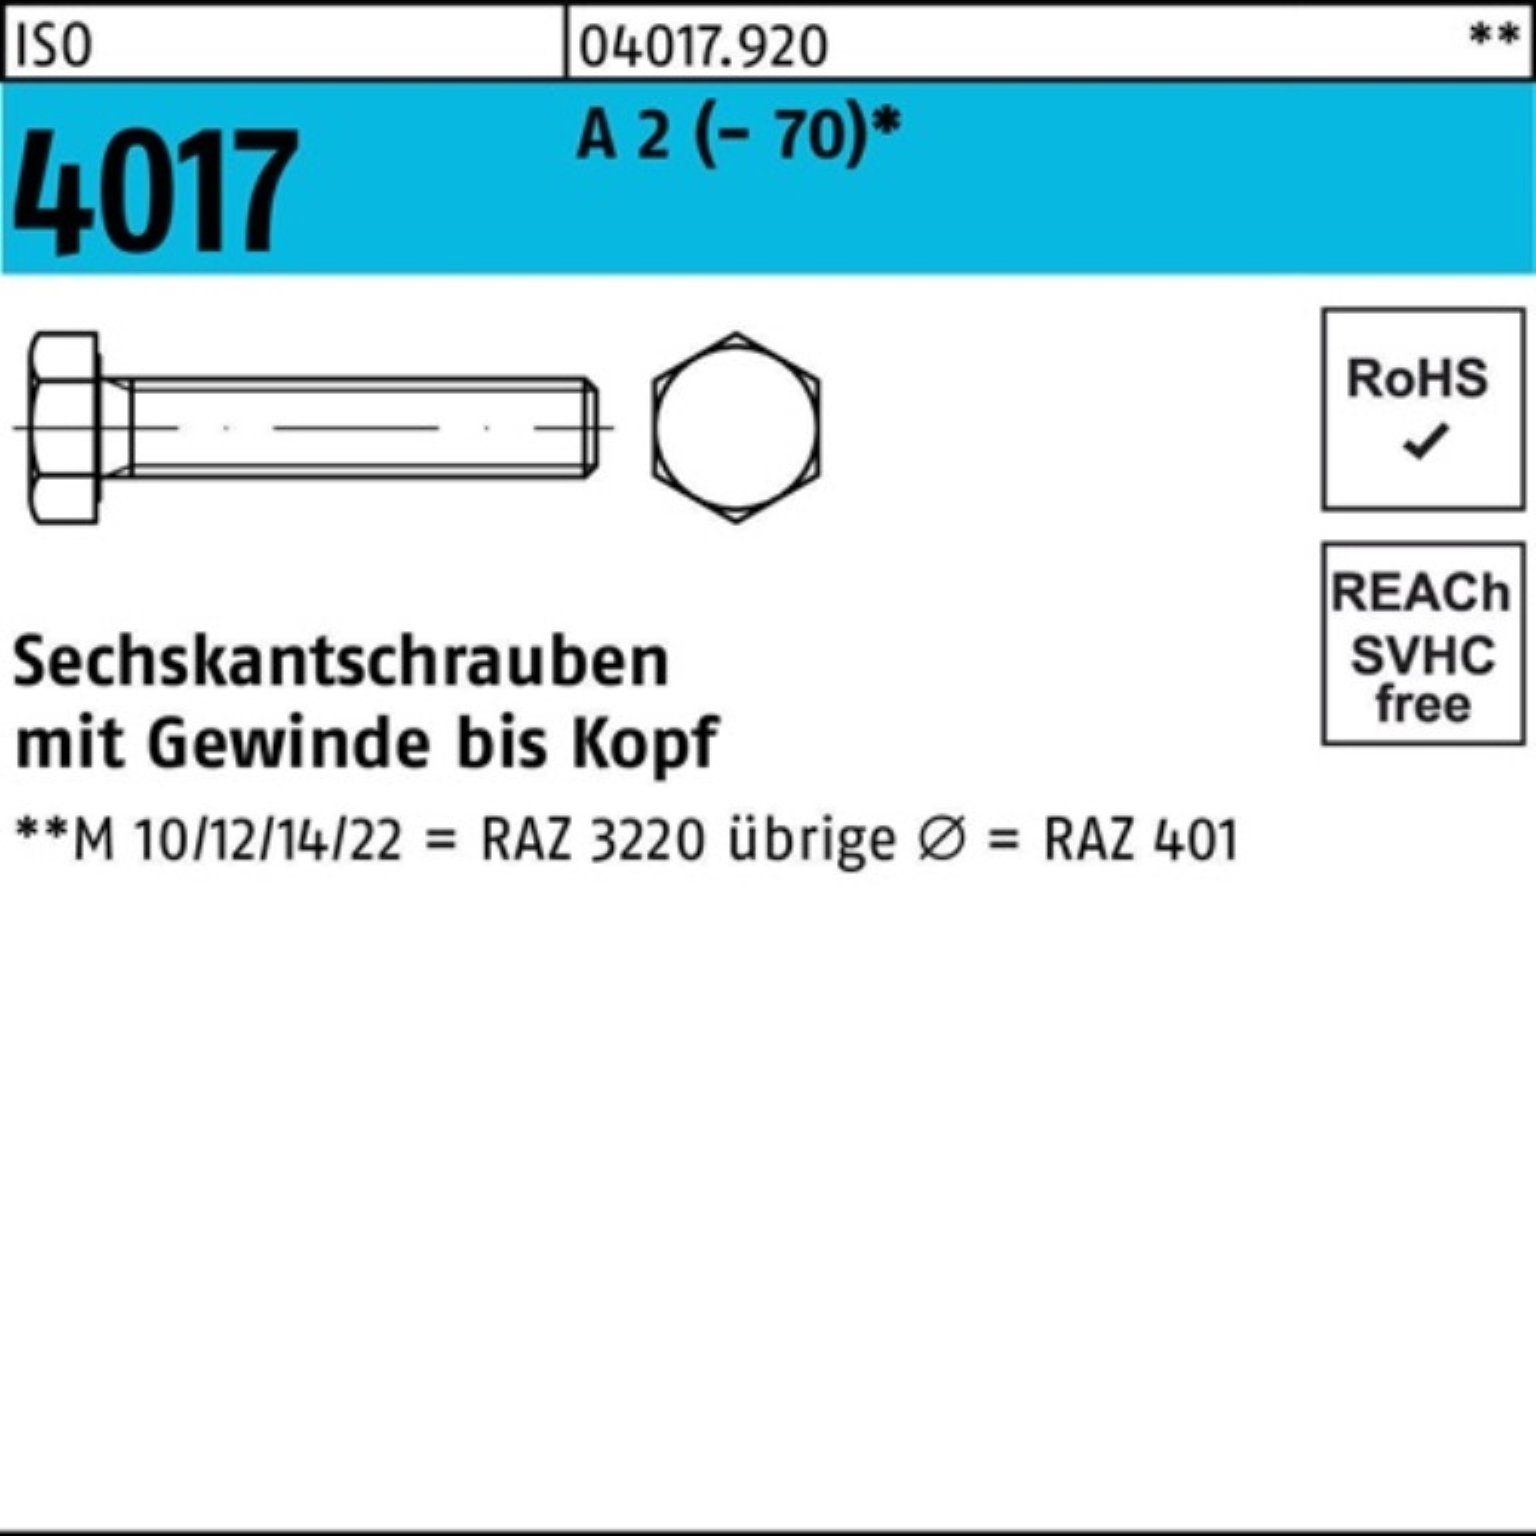 Bufab Sechskantschraube 100er A Stück Pack Sechskantschraube VG 4017 ISO 190 (70) 2 M8x 50